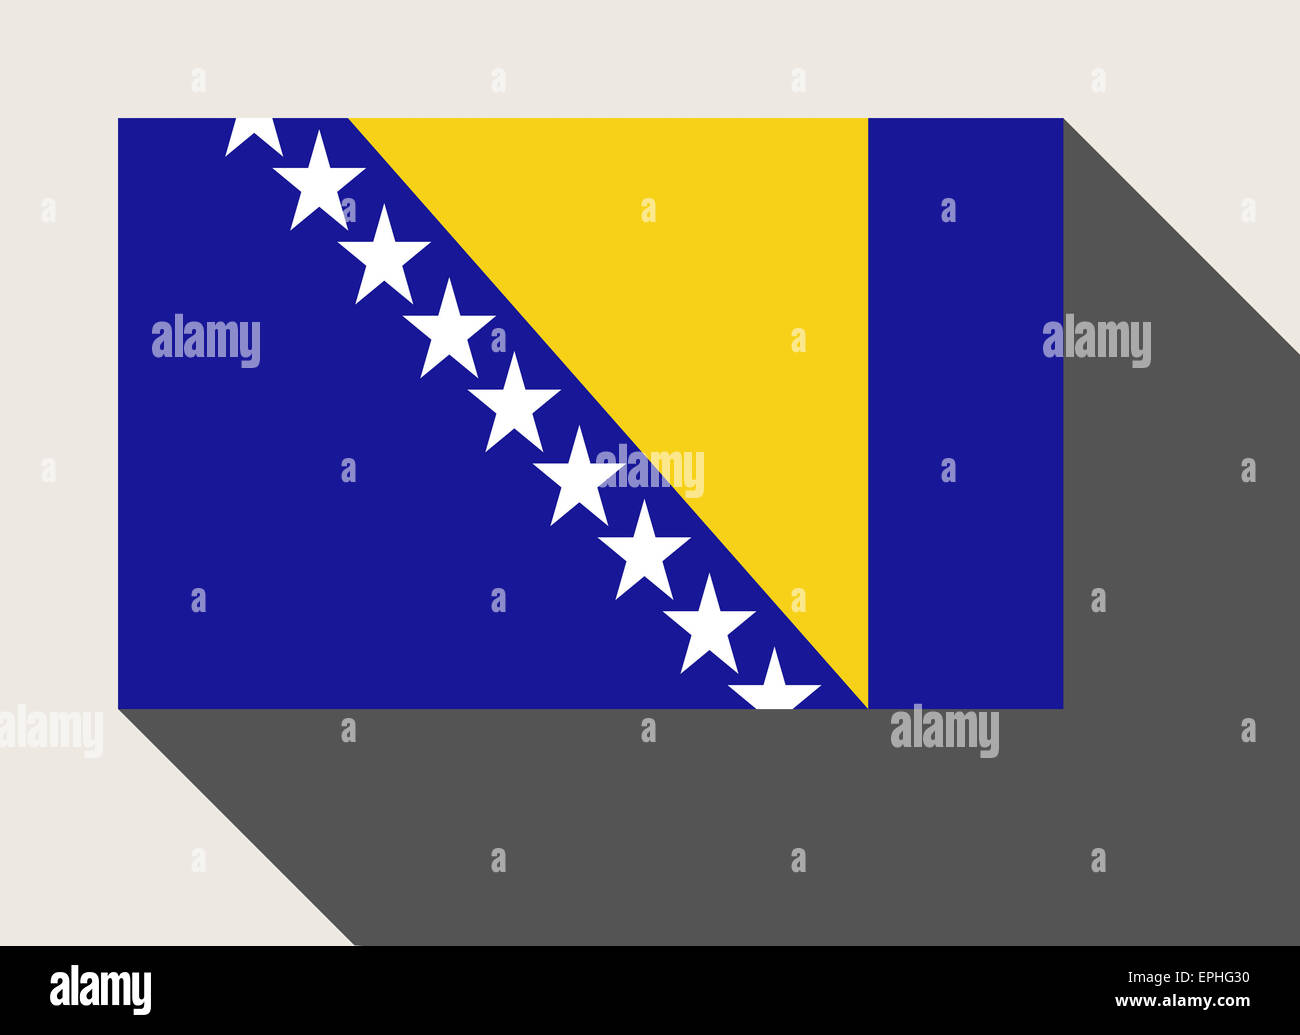 Bosnia and Herzegovina flag in flat web design style. Stock Photo